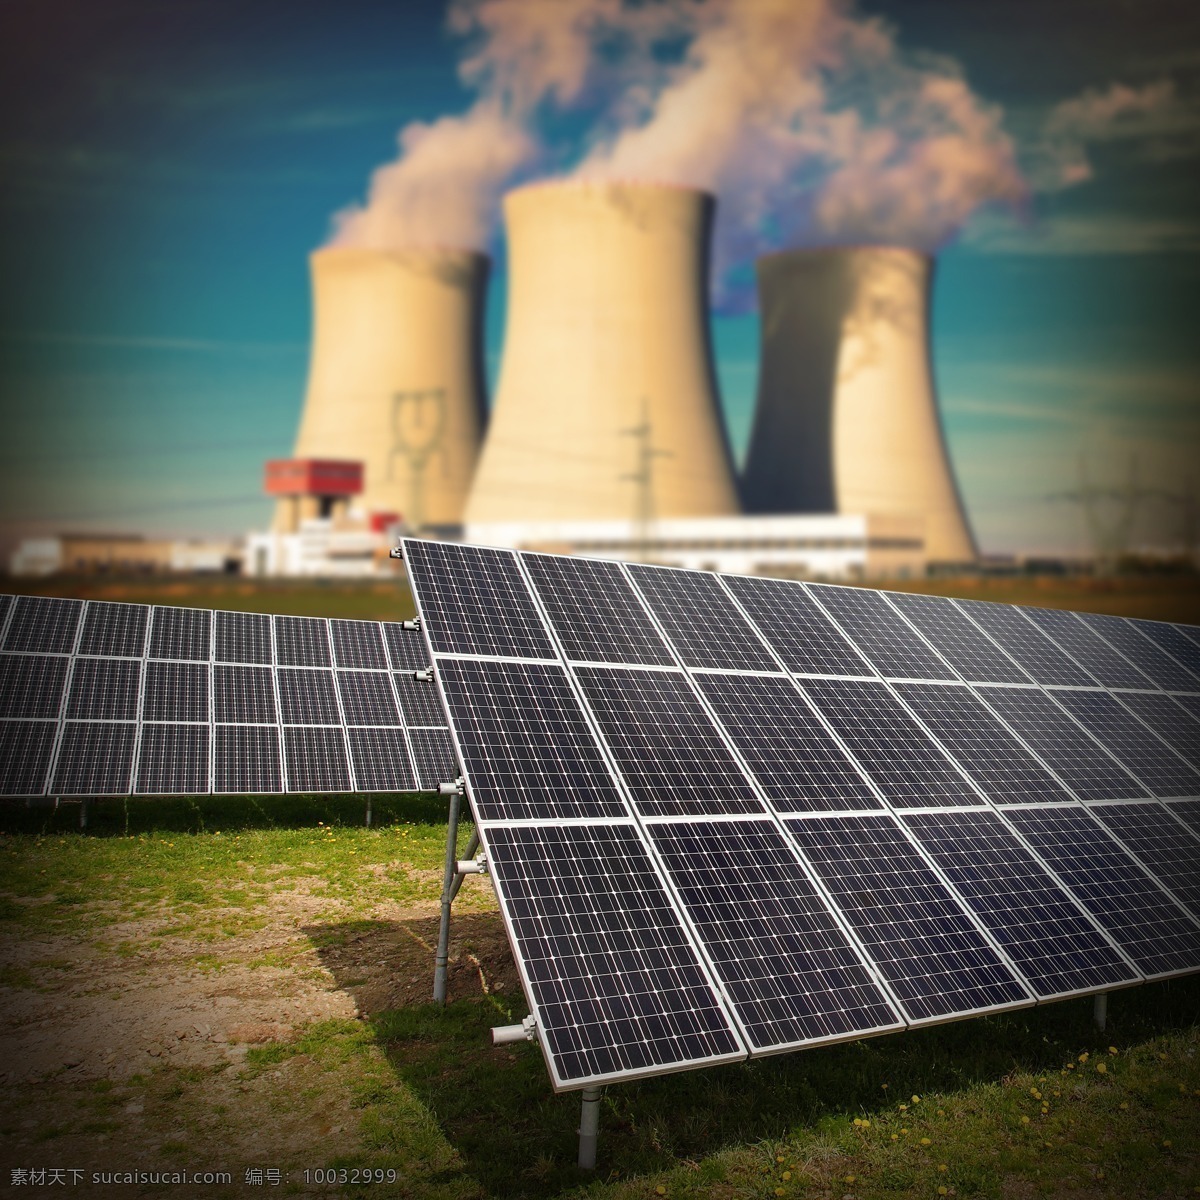 烟囱 太阳能 板 工厂 环境破坏 环境污染 保护环境 环保 节能环保 生态环保 绿色环保 其他类别 环境家居